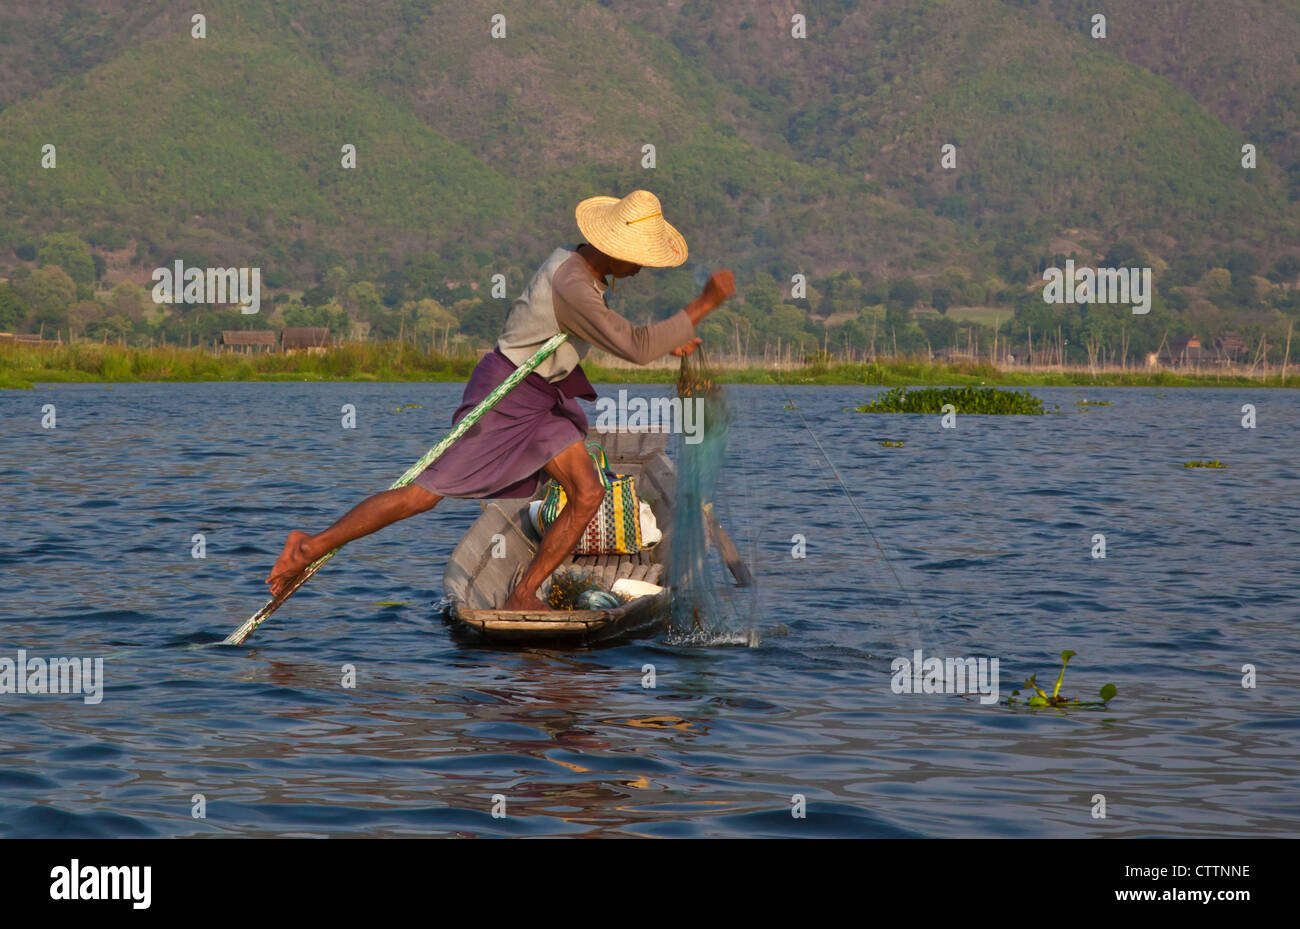 La pêche est toujours fait dans la manière traditionnelle avec des petits bateaux en bois, des filets de pêche et des jambes aviron - Lac Inle, MYANMAR Banque D'Images